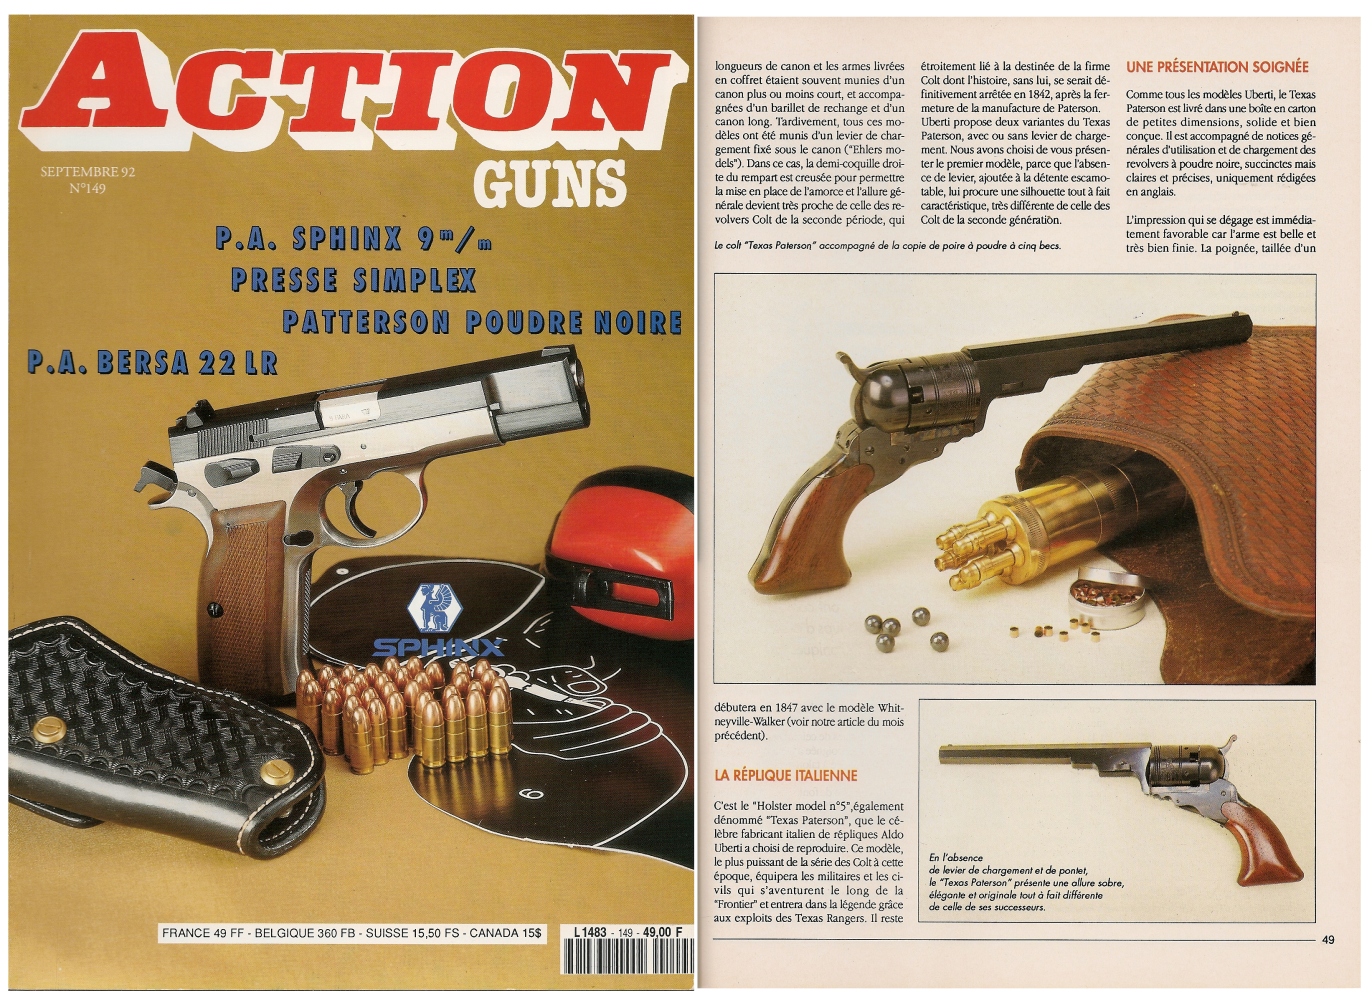 Le banc d’essai de la réplique du Colt Texas Paterson a été publié sur 5 pages dans le magazine Action Guns n°149 (septembre 1992).